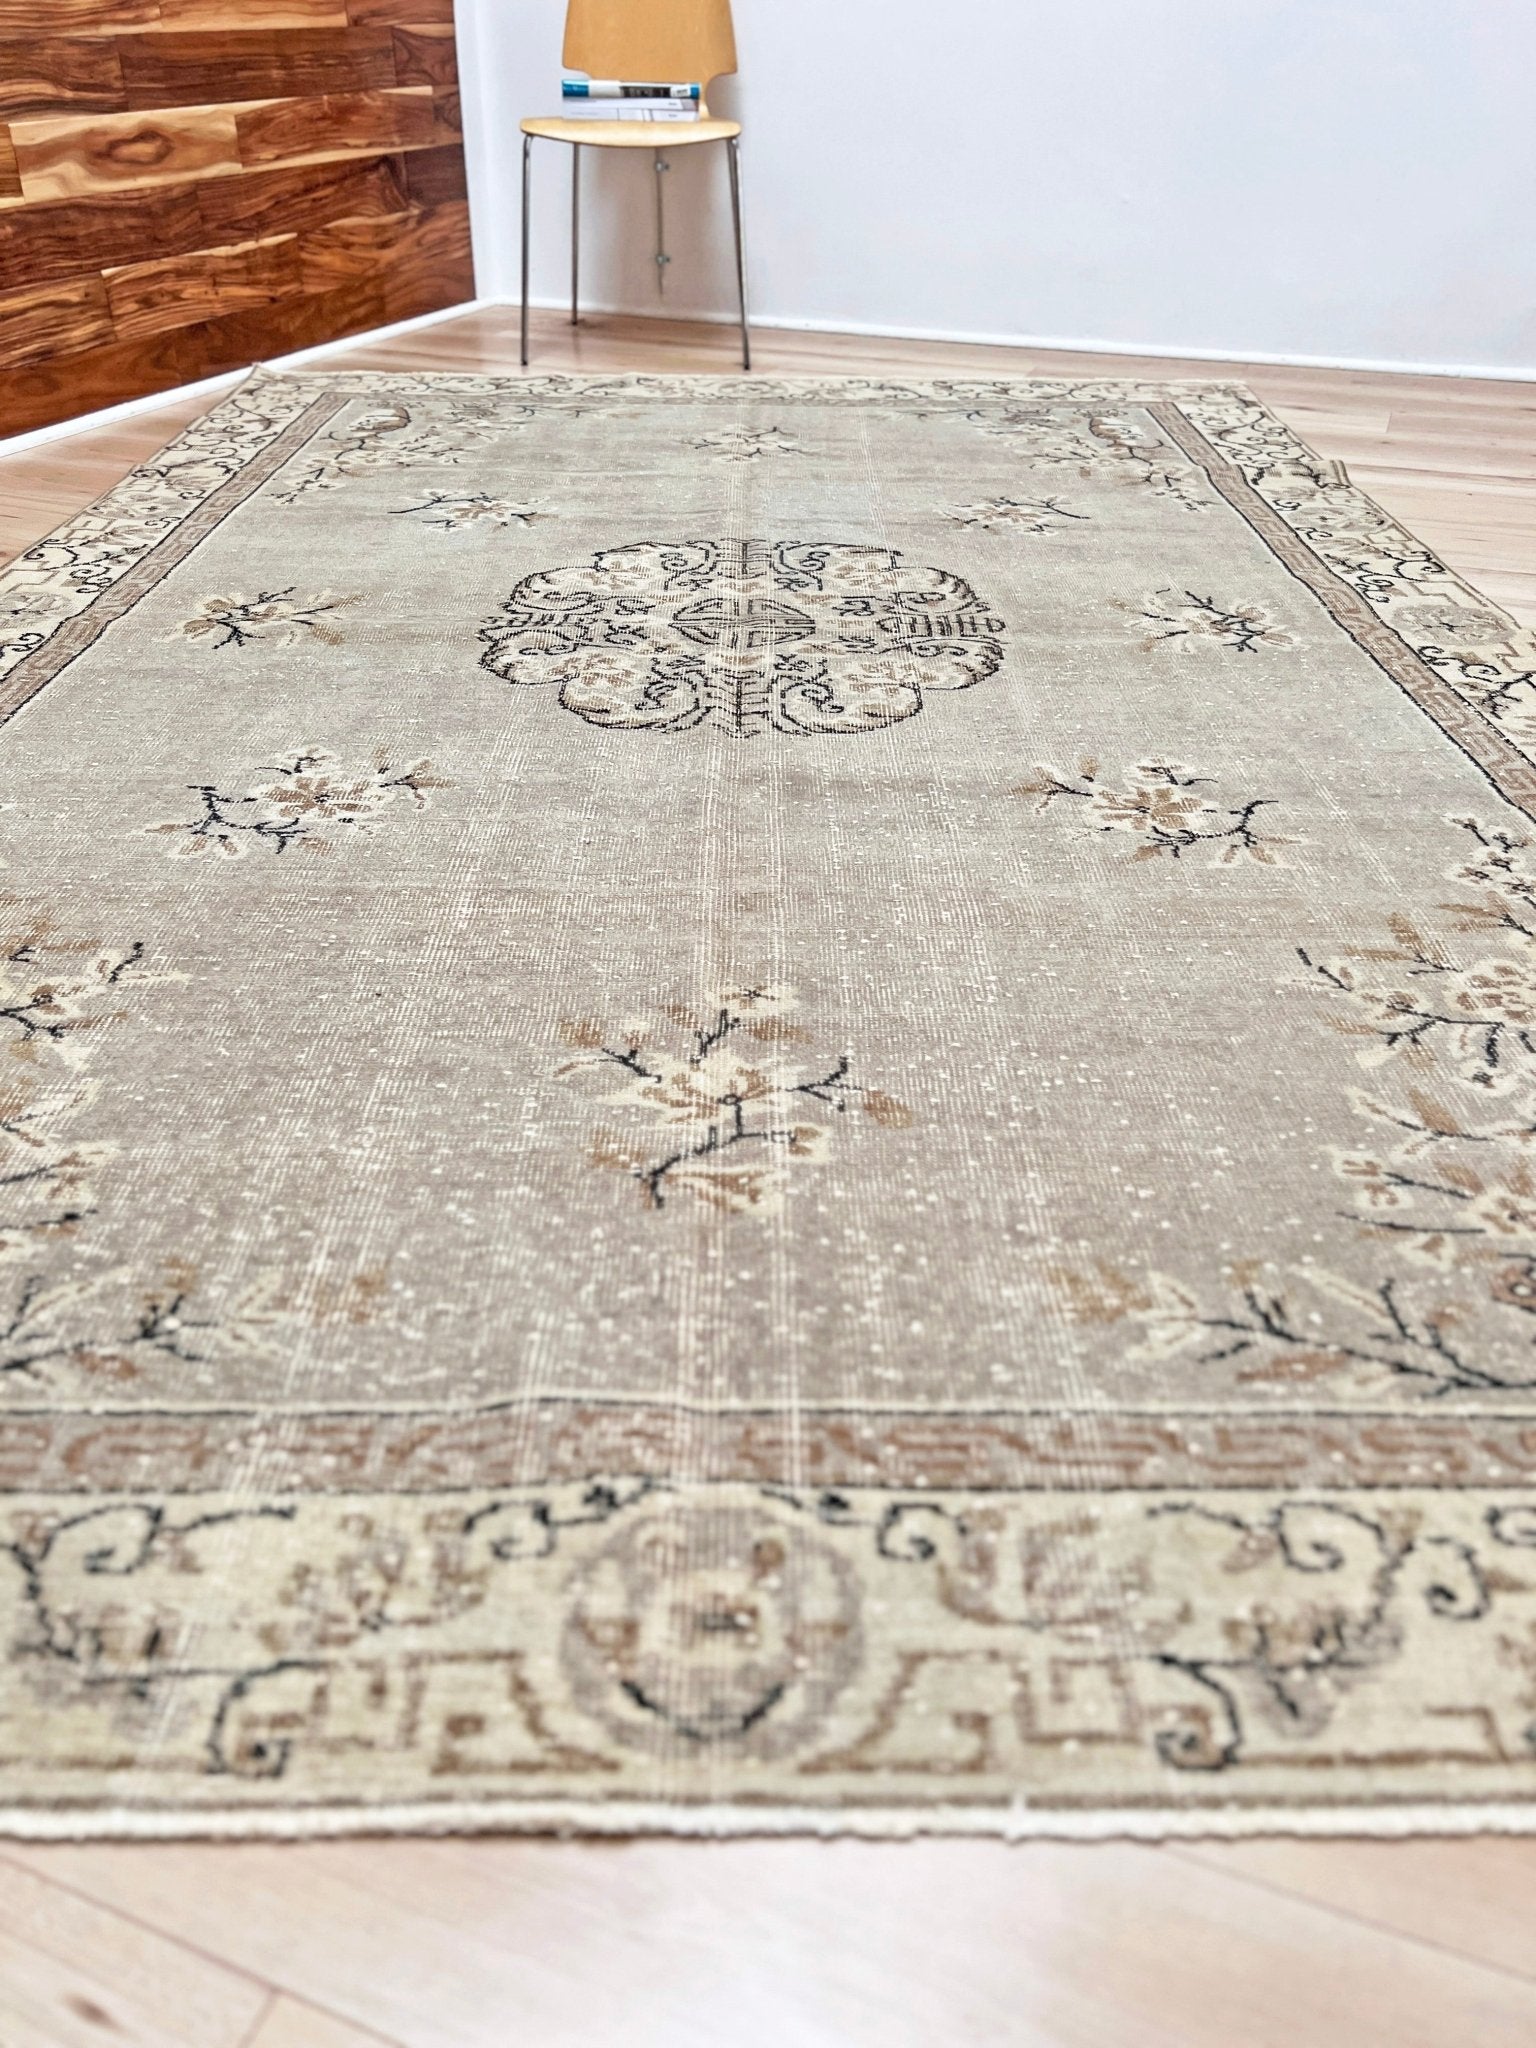 vintage muted Turkish rug shop san francisco bay area. Large distressed rug. Home decor shop. Buy handmade rug online